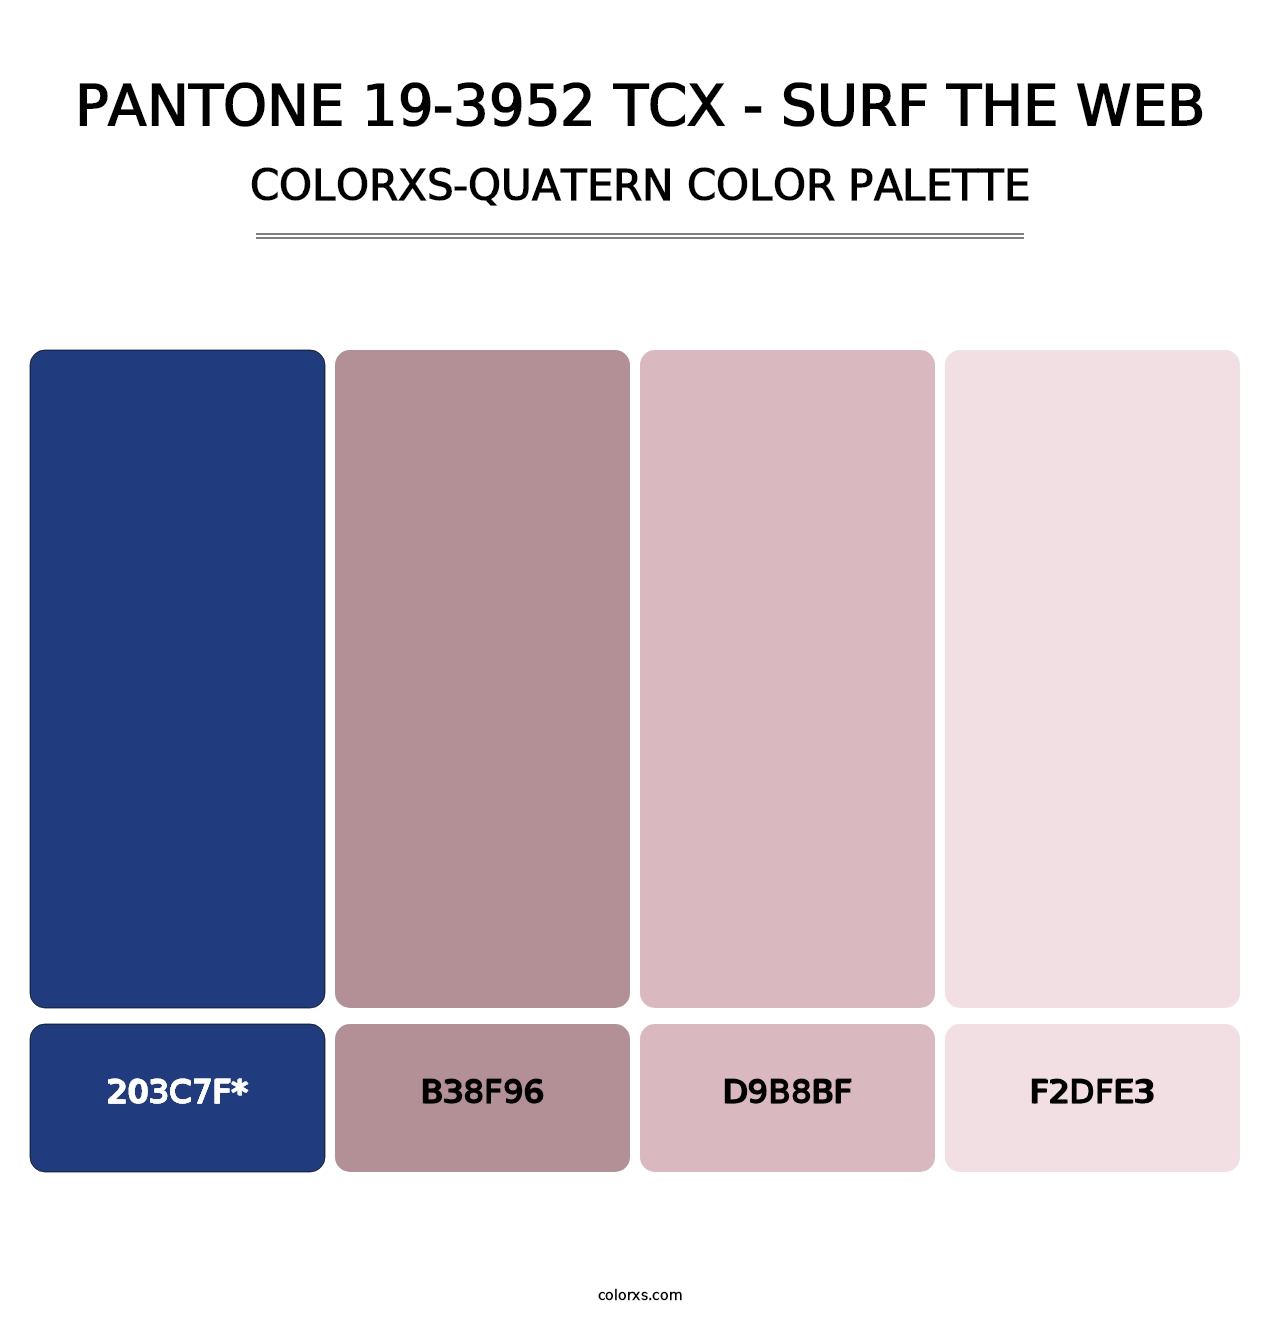 PANTONE 19-3952 TCX - Surf the Web - Colorxs Quatern Palette